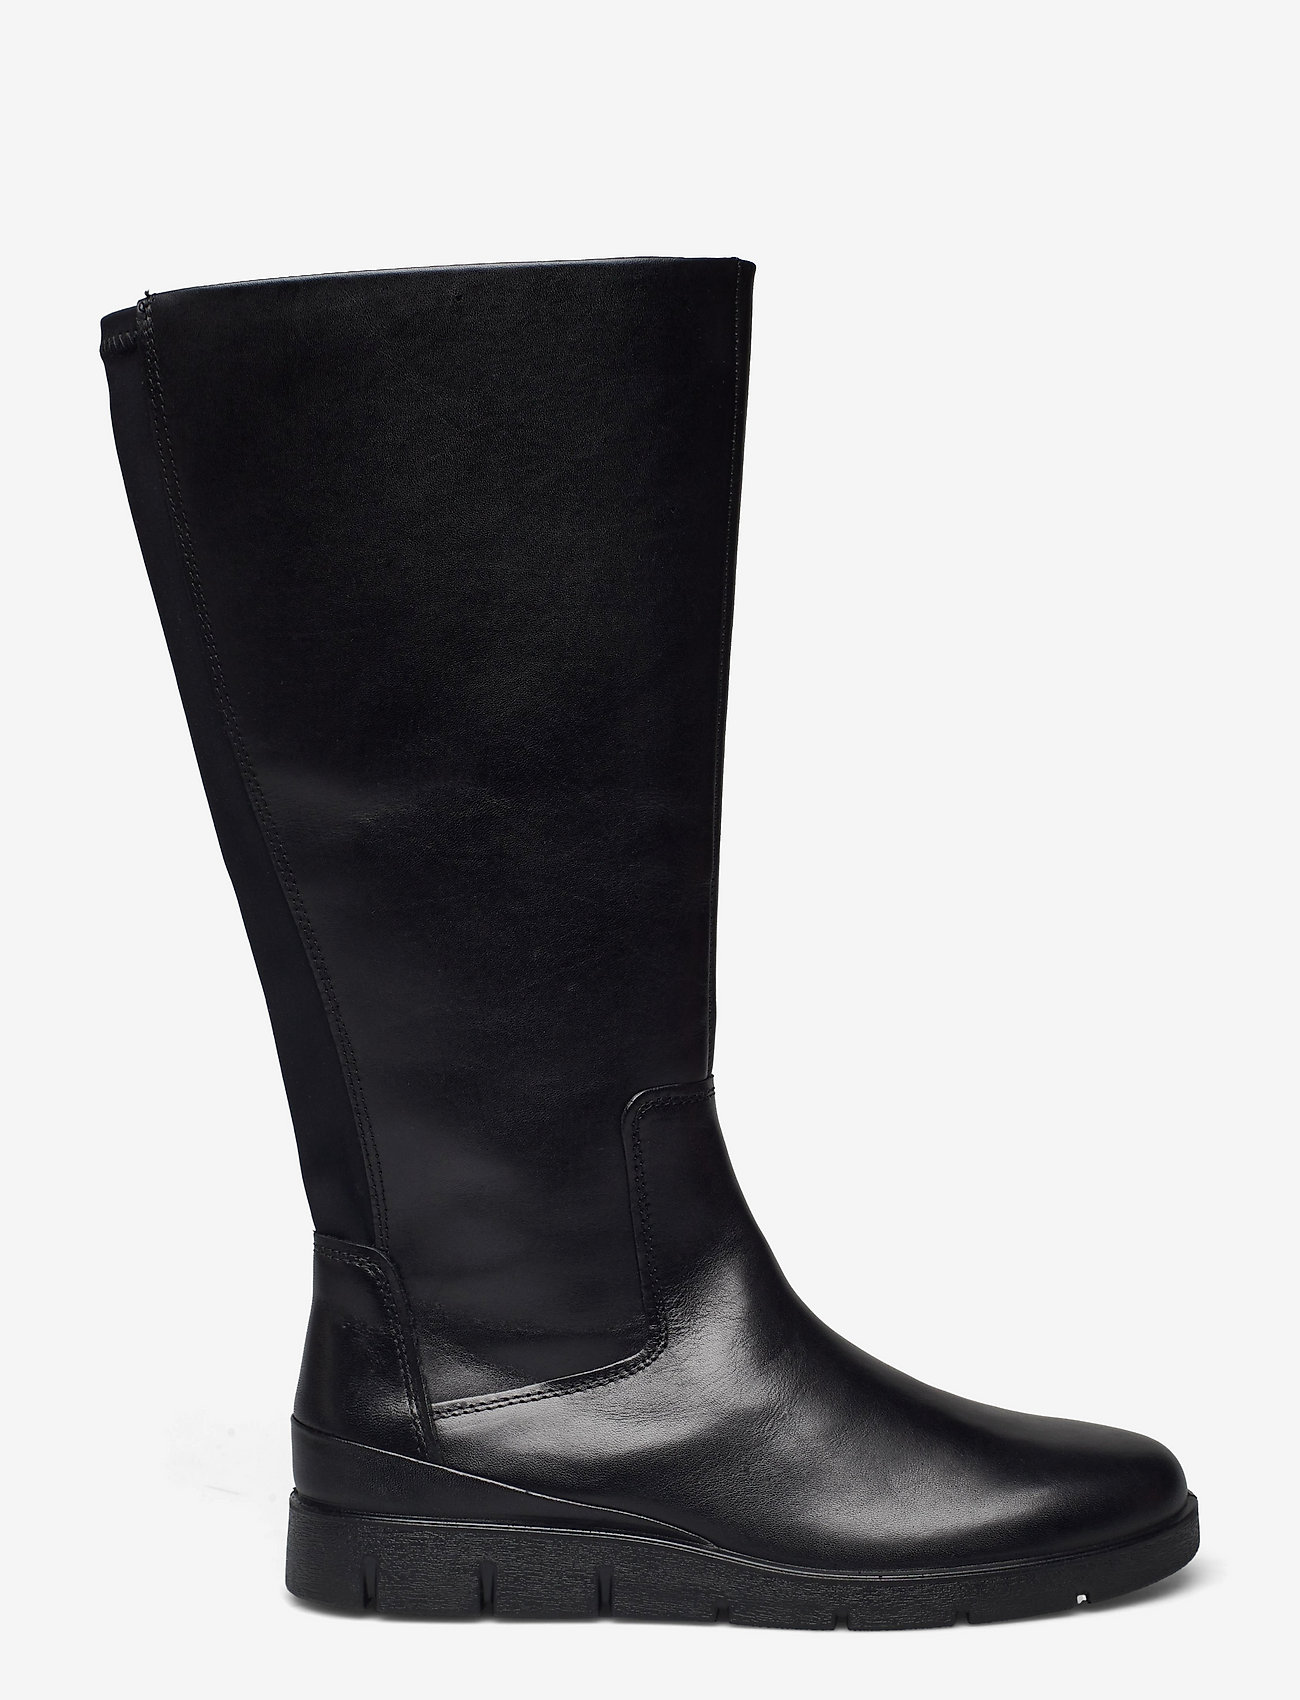 ECCO Bella - Long boots | Boozt.com